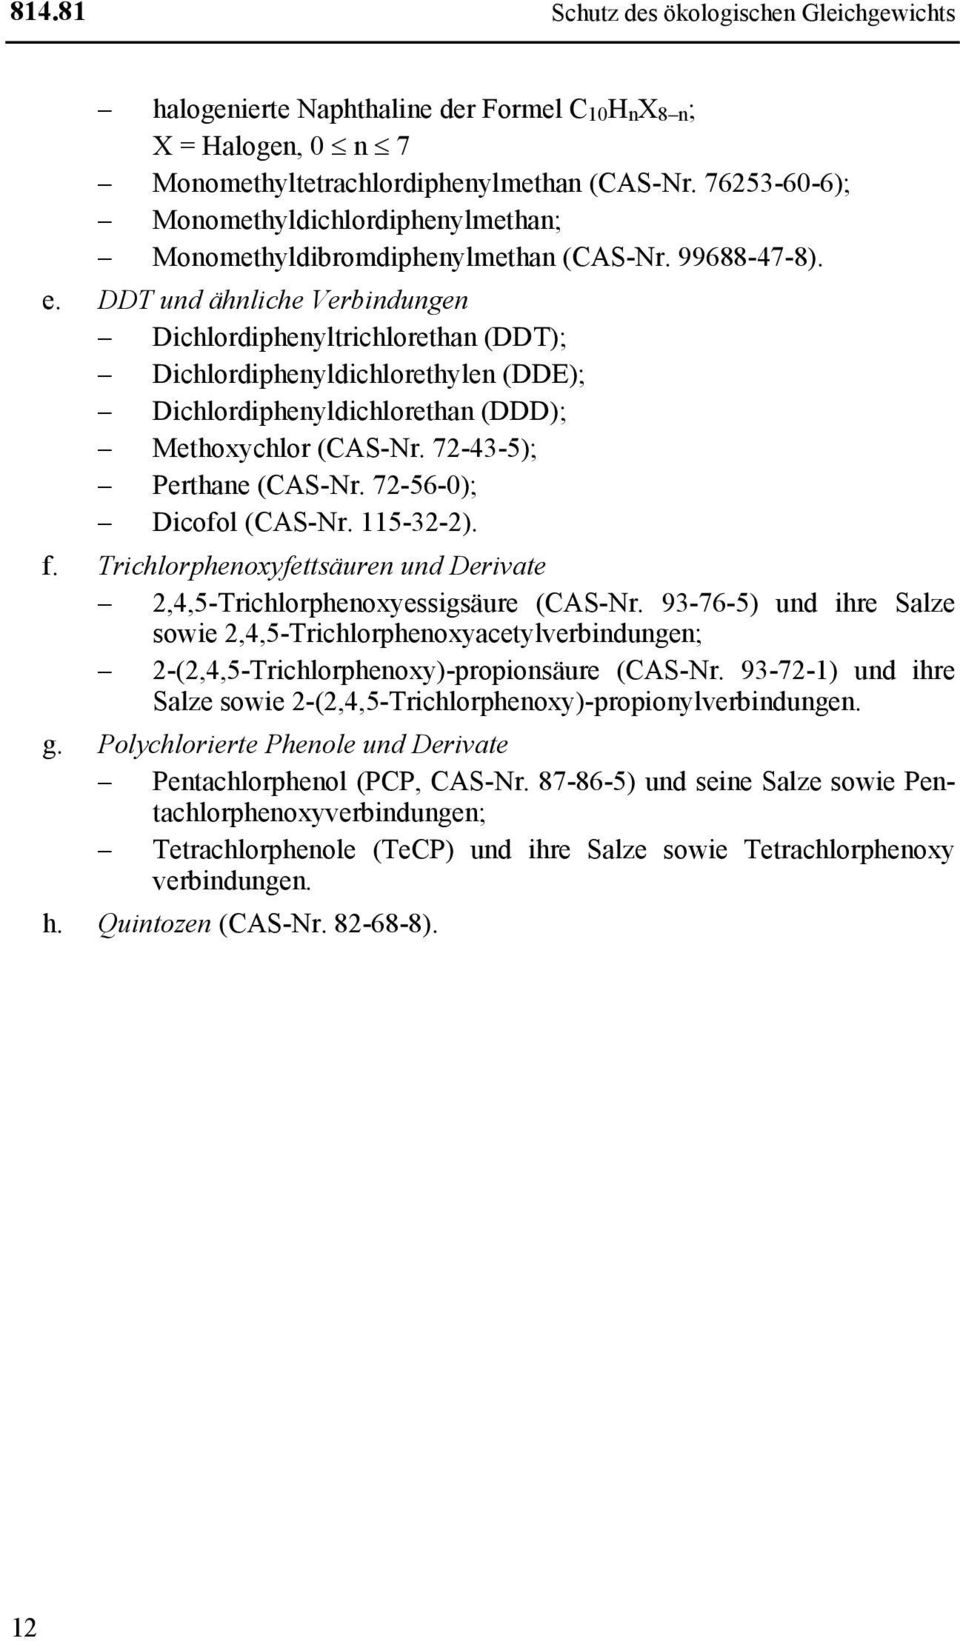 DDT und ähnliche Verbindungen Dichlordiphenyltrichlorethan (DDT); Dichlordiphenyldichlorethylen (DDE); Dichlordiphenyldichlorethan (DDD); Methoxychlor (CAS-Nr. 72-43-5); Perthane (CAS-Nr.